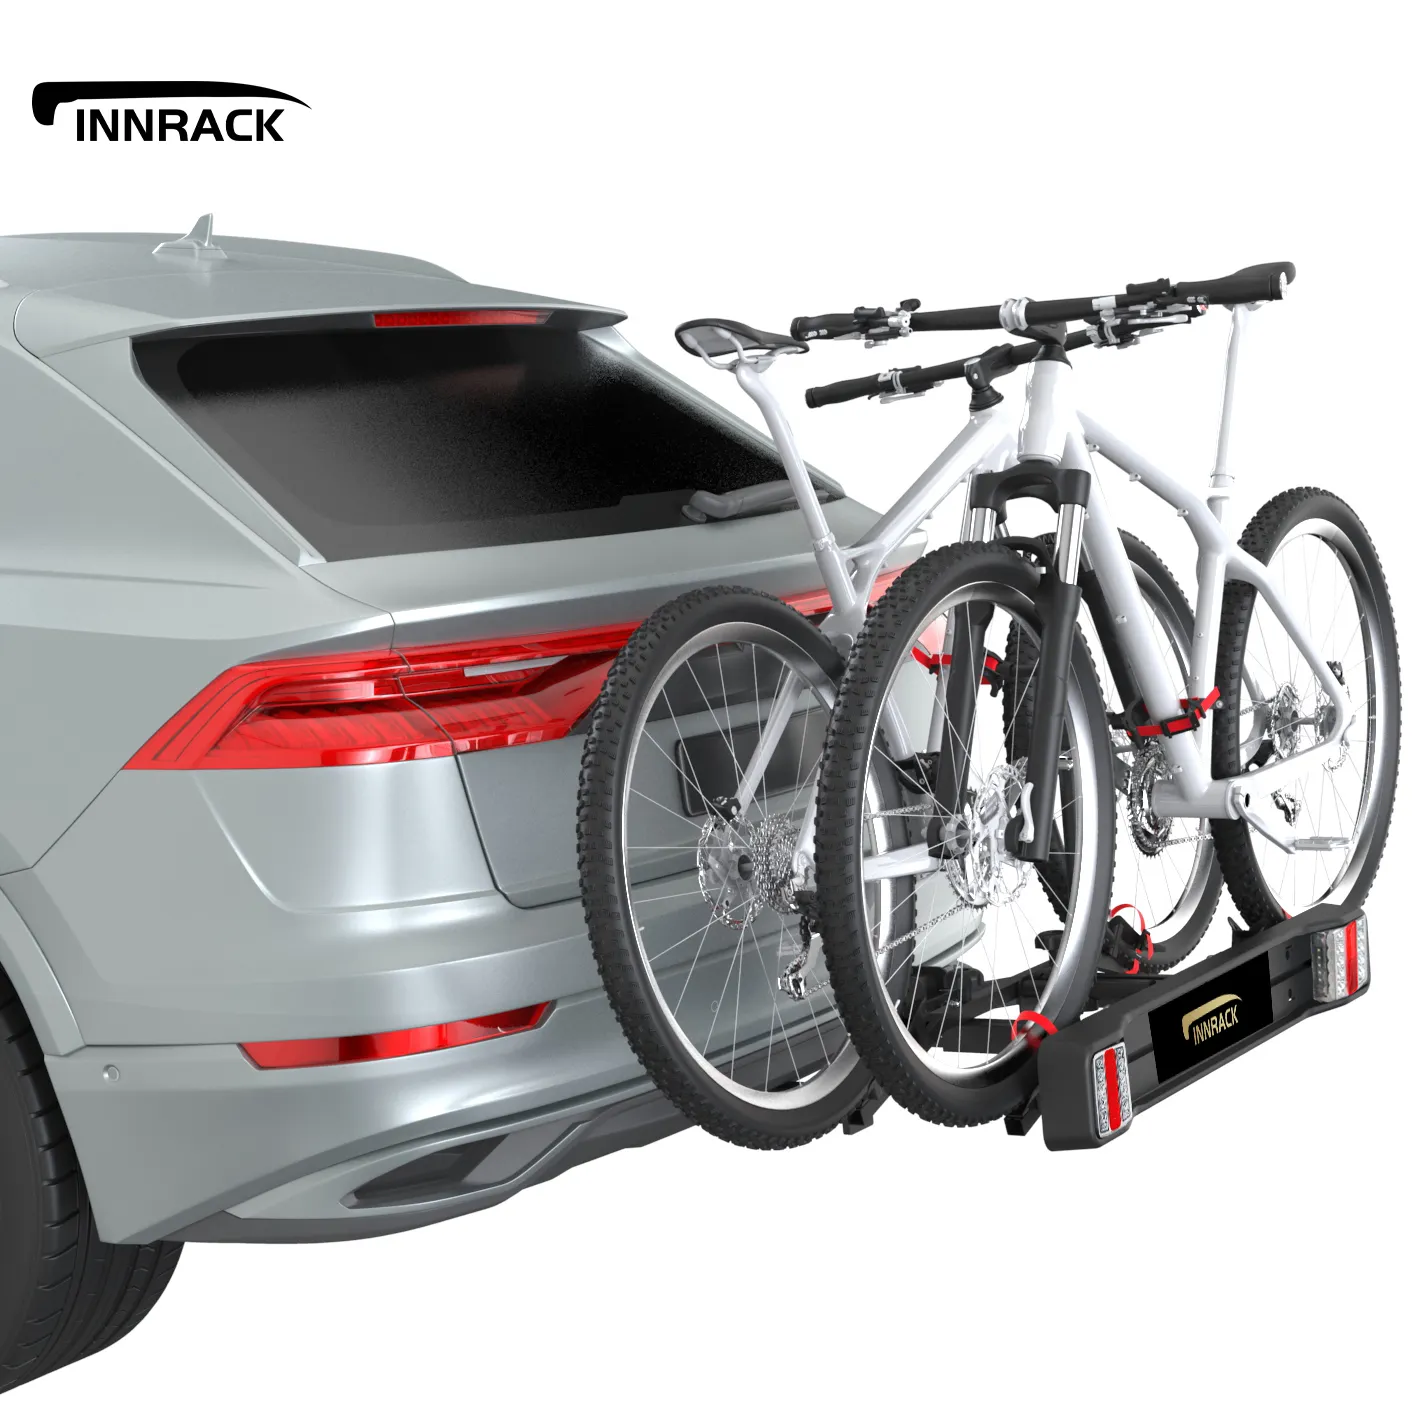 OEM bisiklet araba raf 2 bisikletleri çeki topu bisiklet taşıyıcı Sedan açık seyahat demir tüp gövde montaj bisiklet rafı